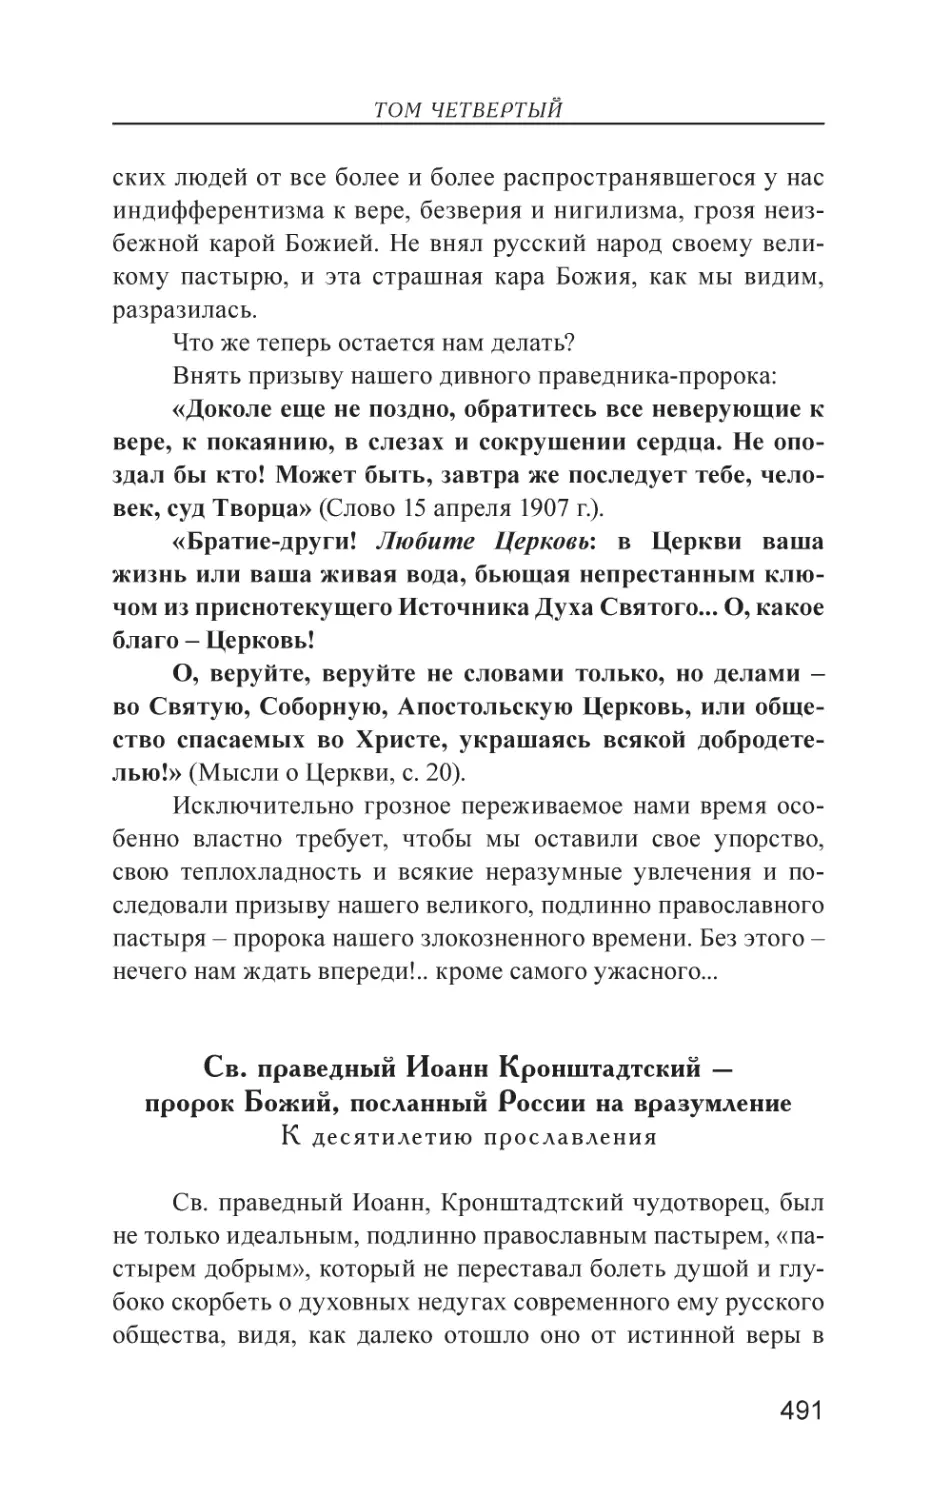 Св. праведный Иоанн Кронштадтский – пророк Божий, посланный России на вразумление